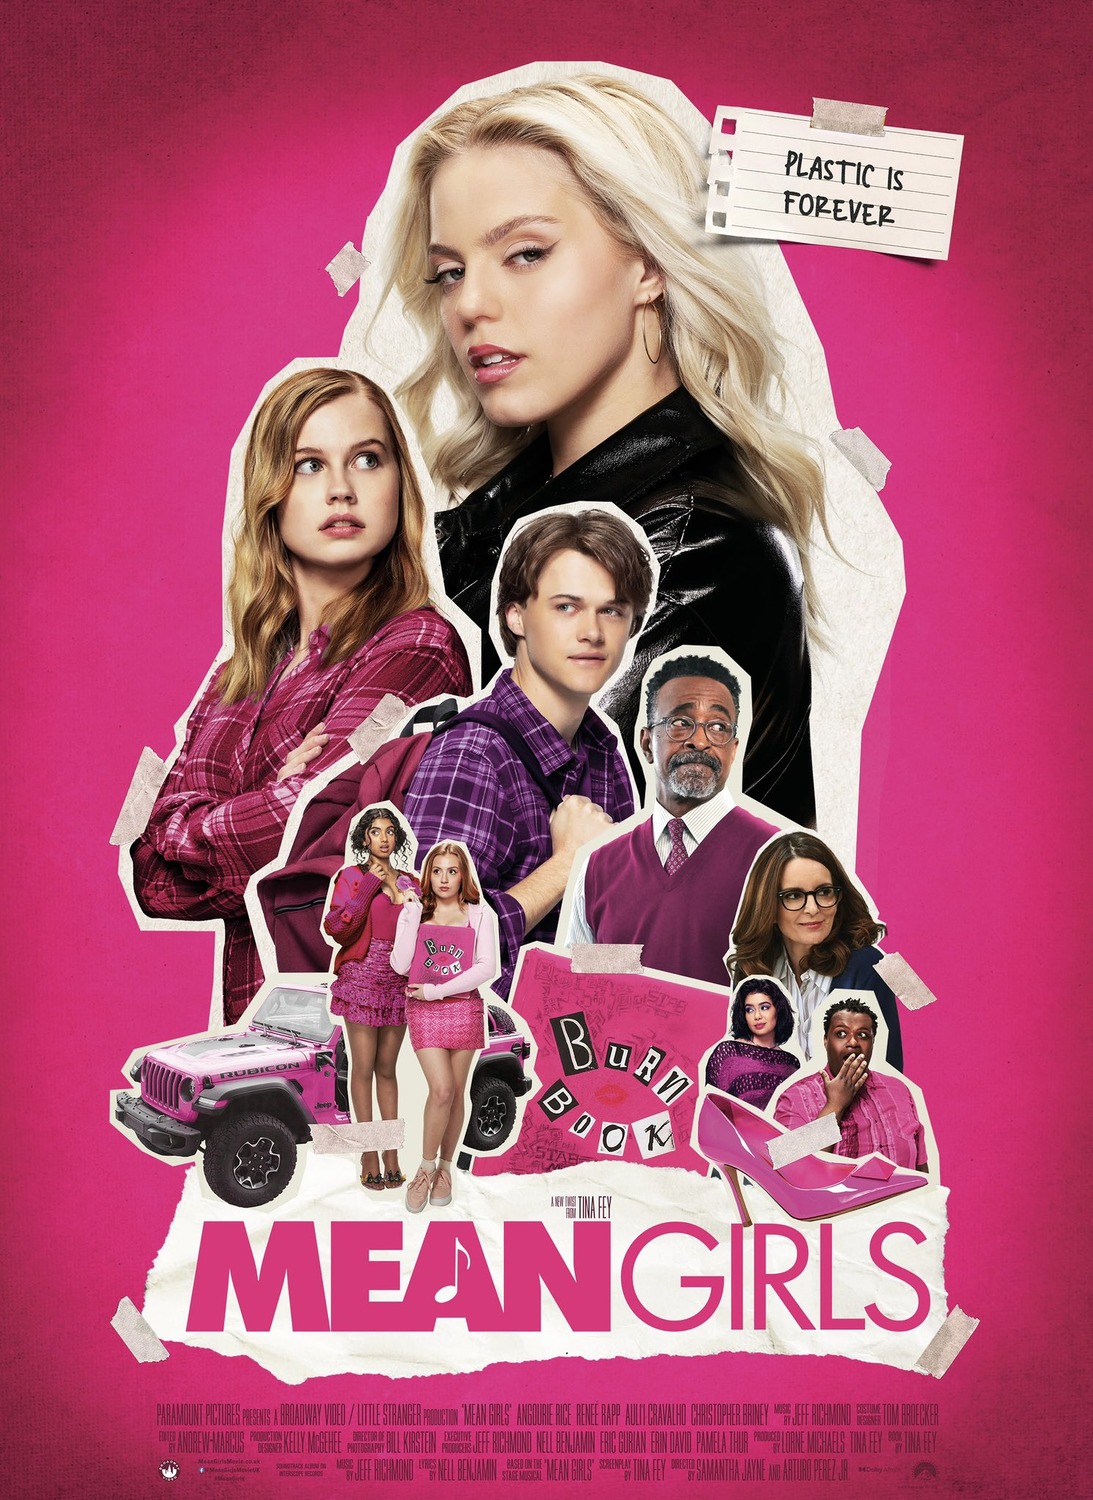 Girls on Film : Mega Sized Movie Poster Image - IMP Awards